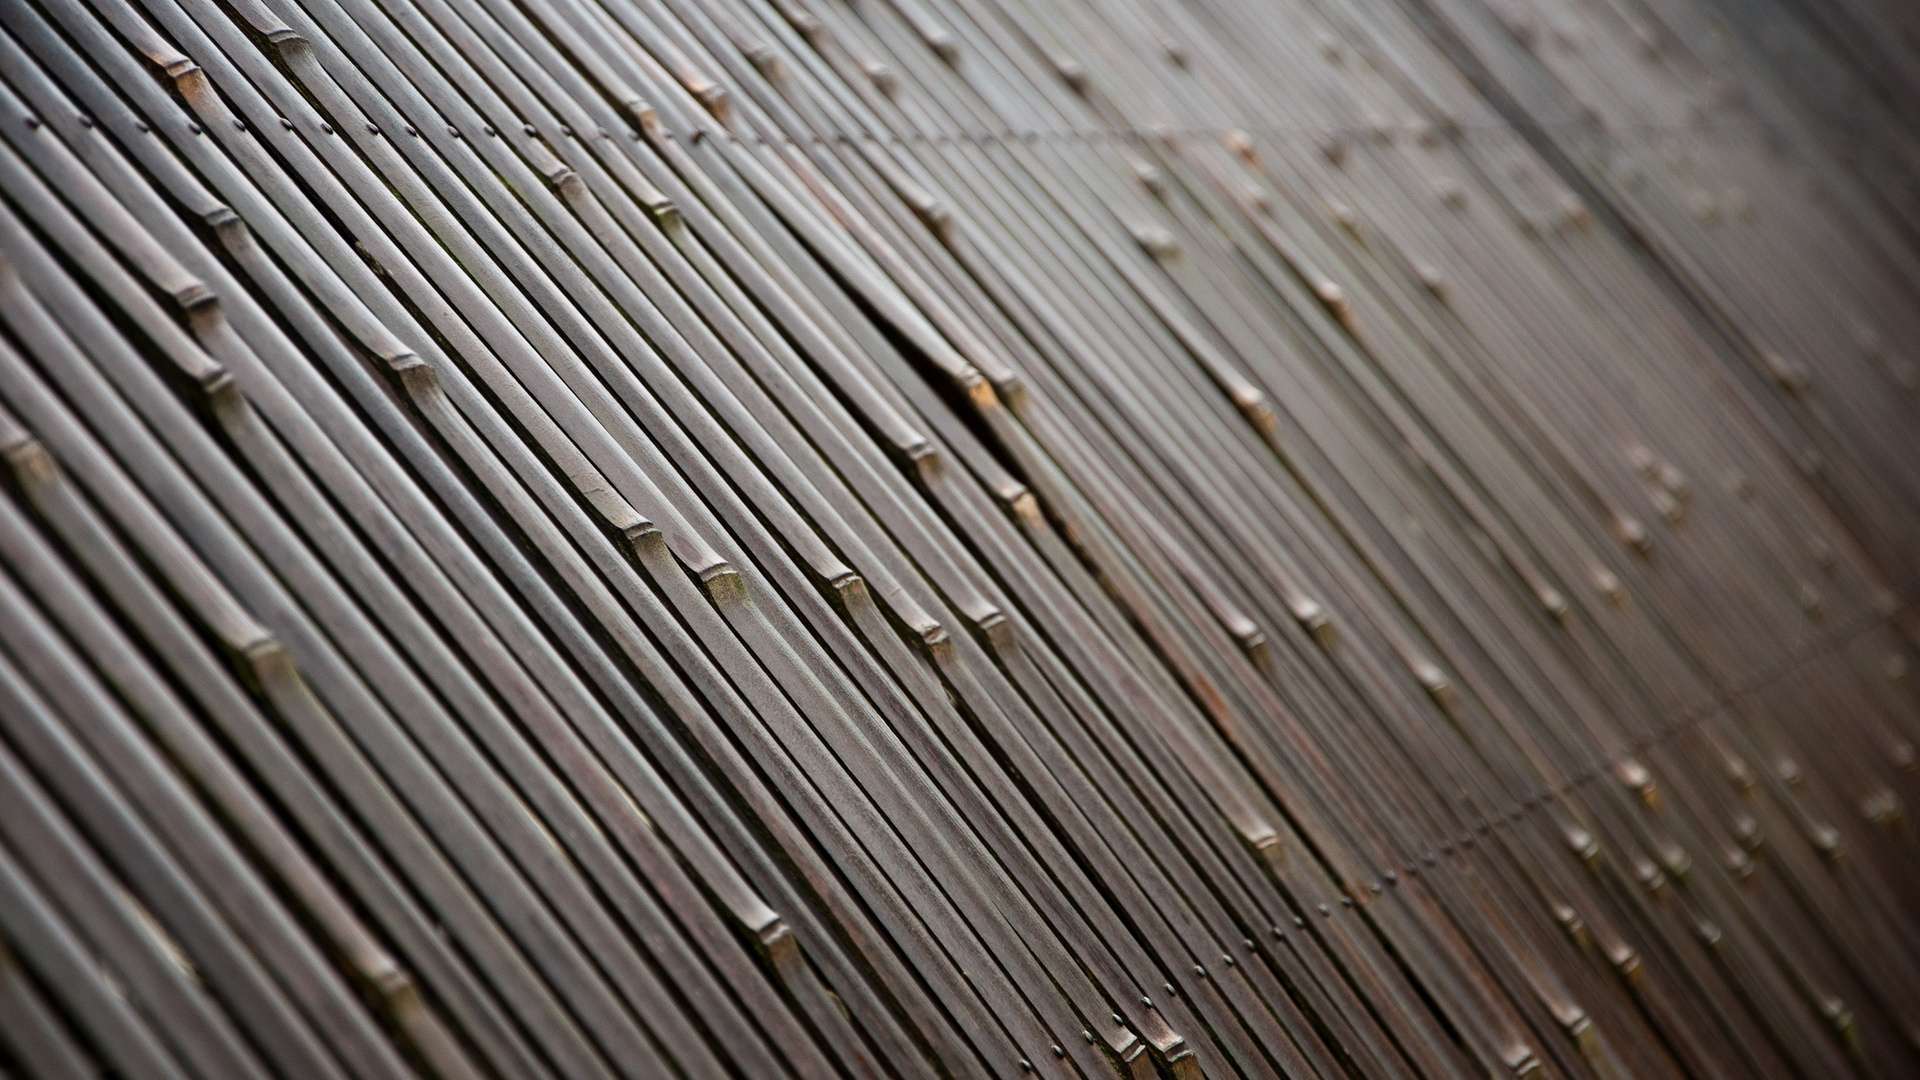 texture-bamboo-fence-hd-wallpaper-1080p.jpg